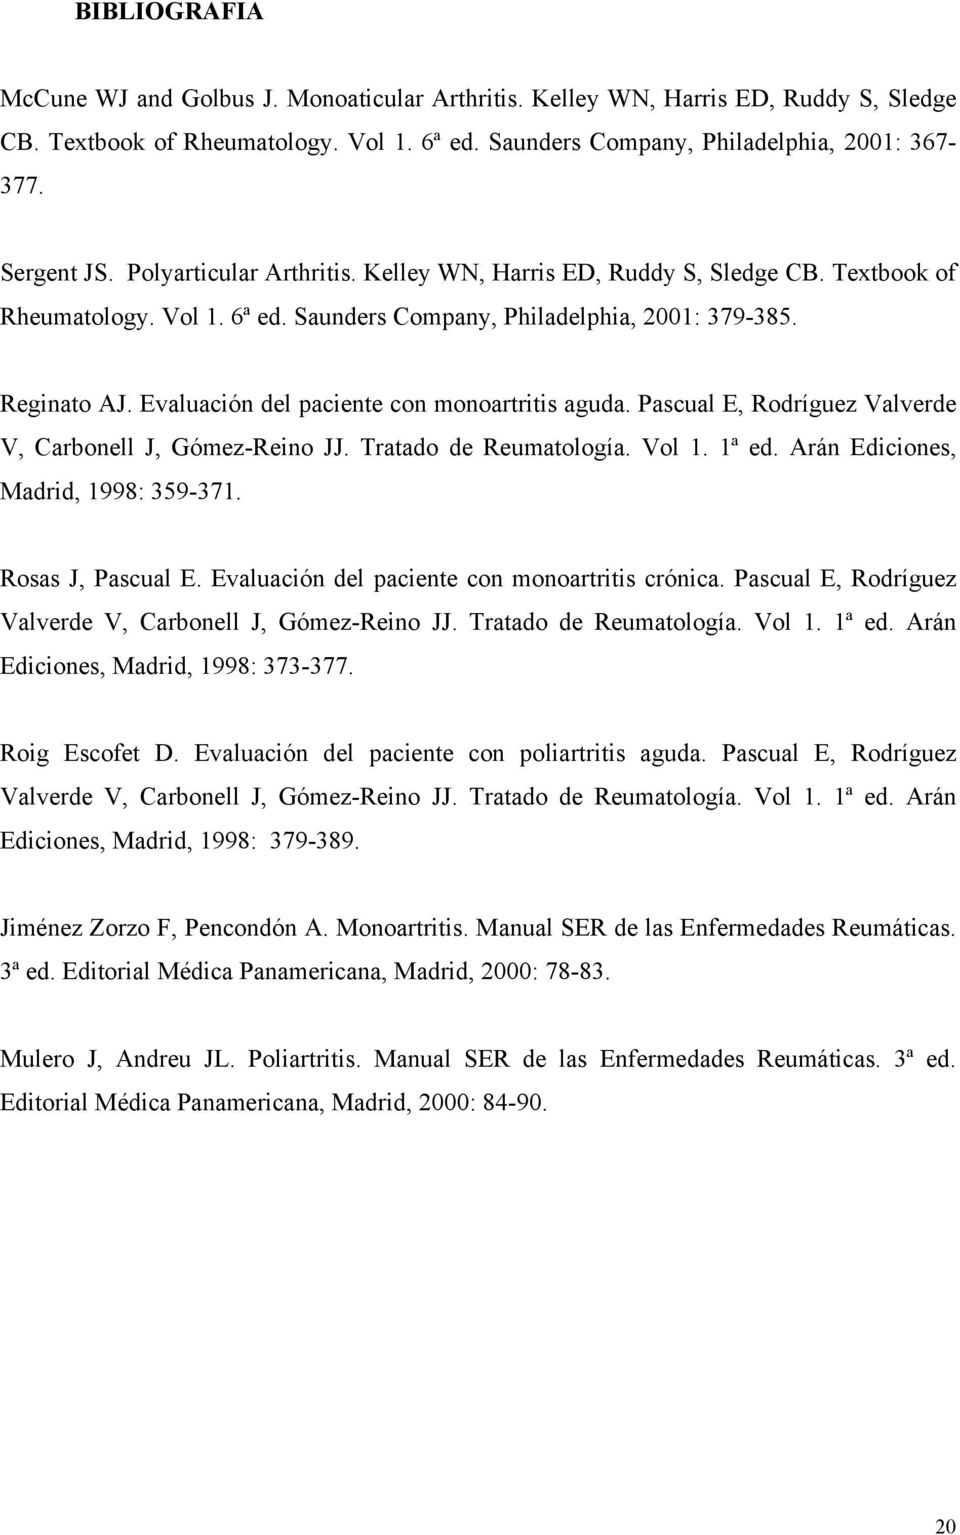 Evaluación del paciente con monoartritis aguda. Pascual E, Rodríguez Valverde V, Carbonell J, Gómez-Reino JJ. Tratado de Reumatología. Vol 1. 1ª ed. Arán Ediciones, Madrid, 1998: 359-371.